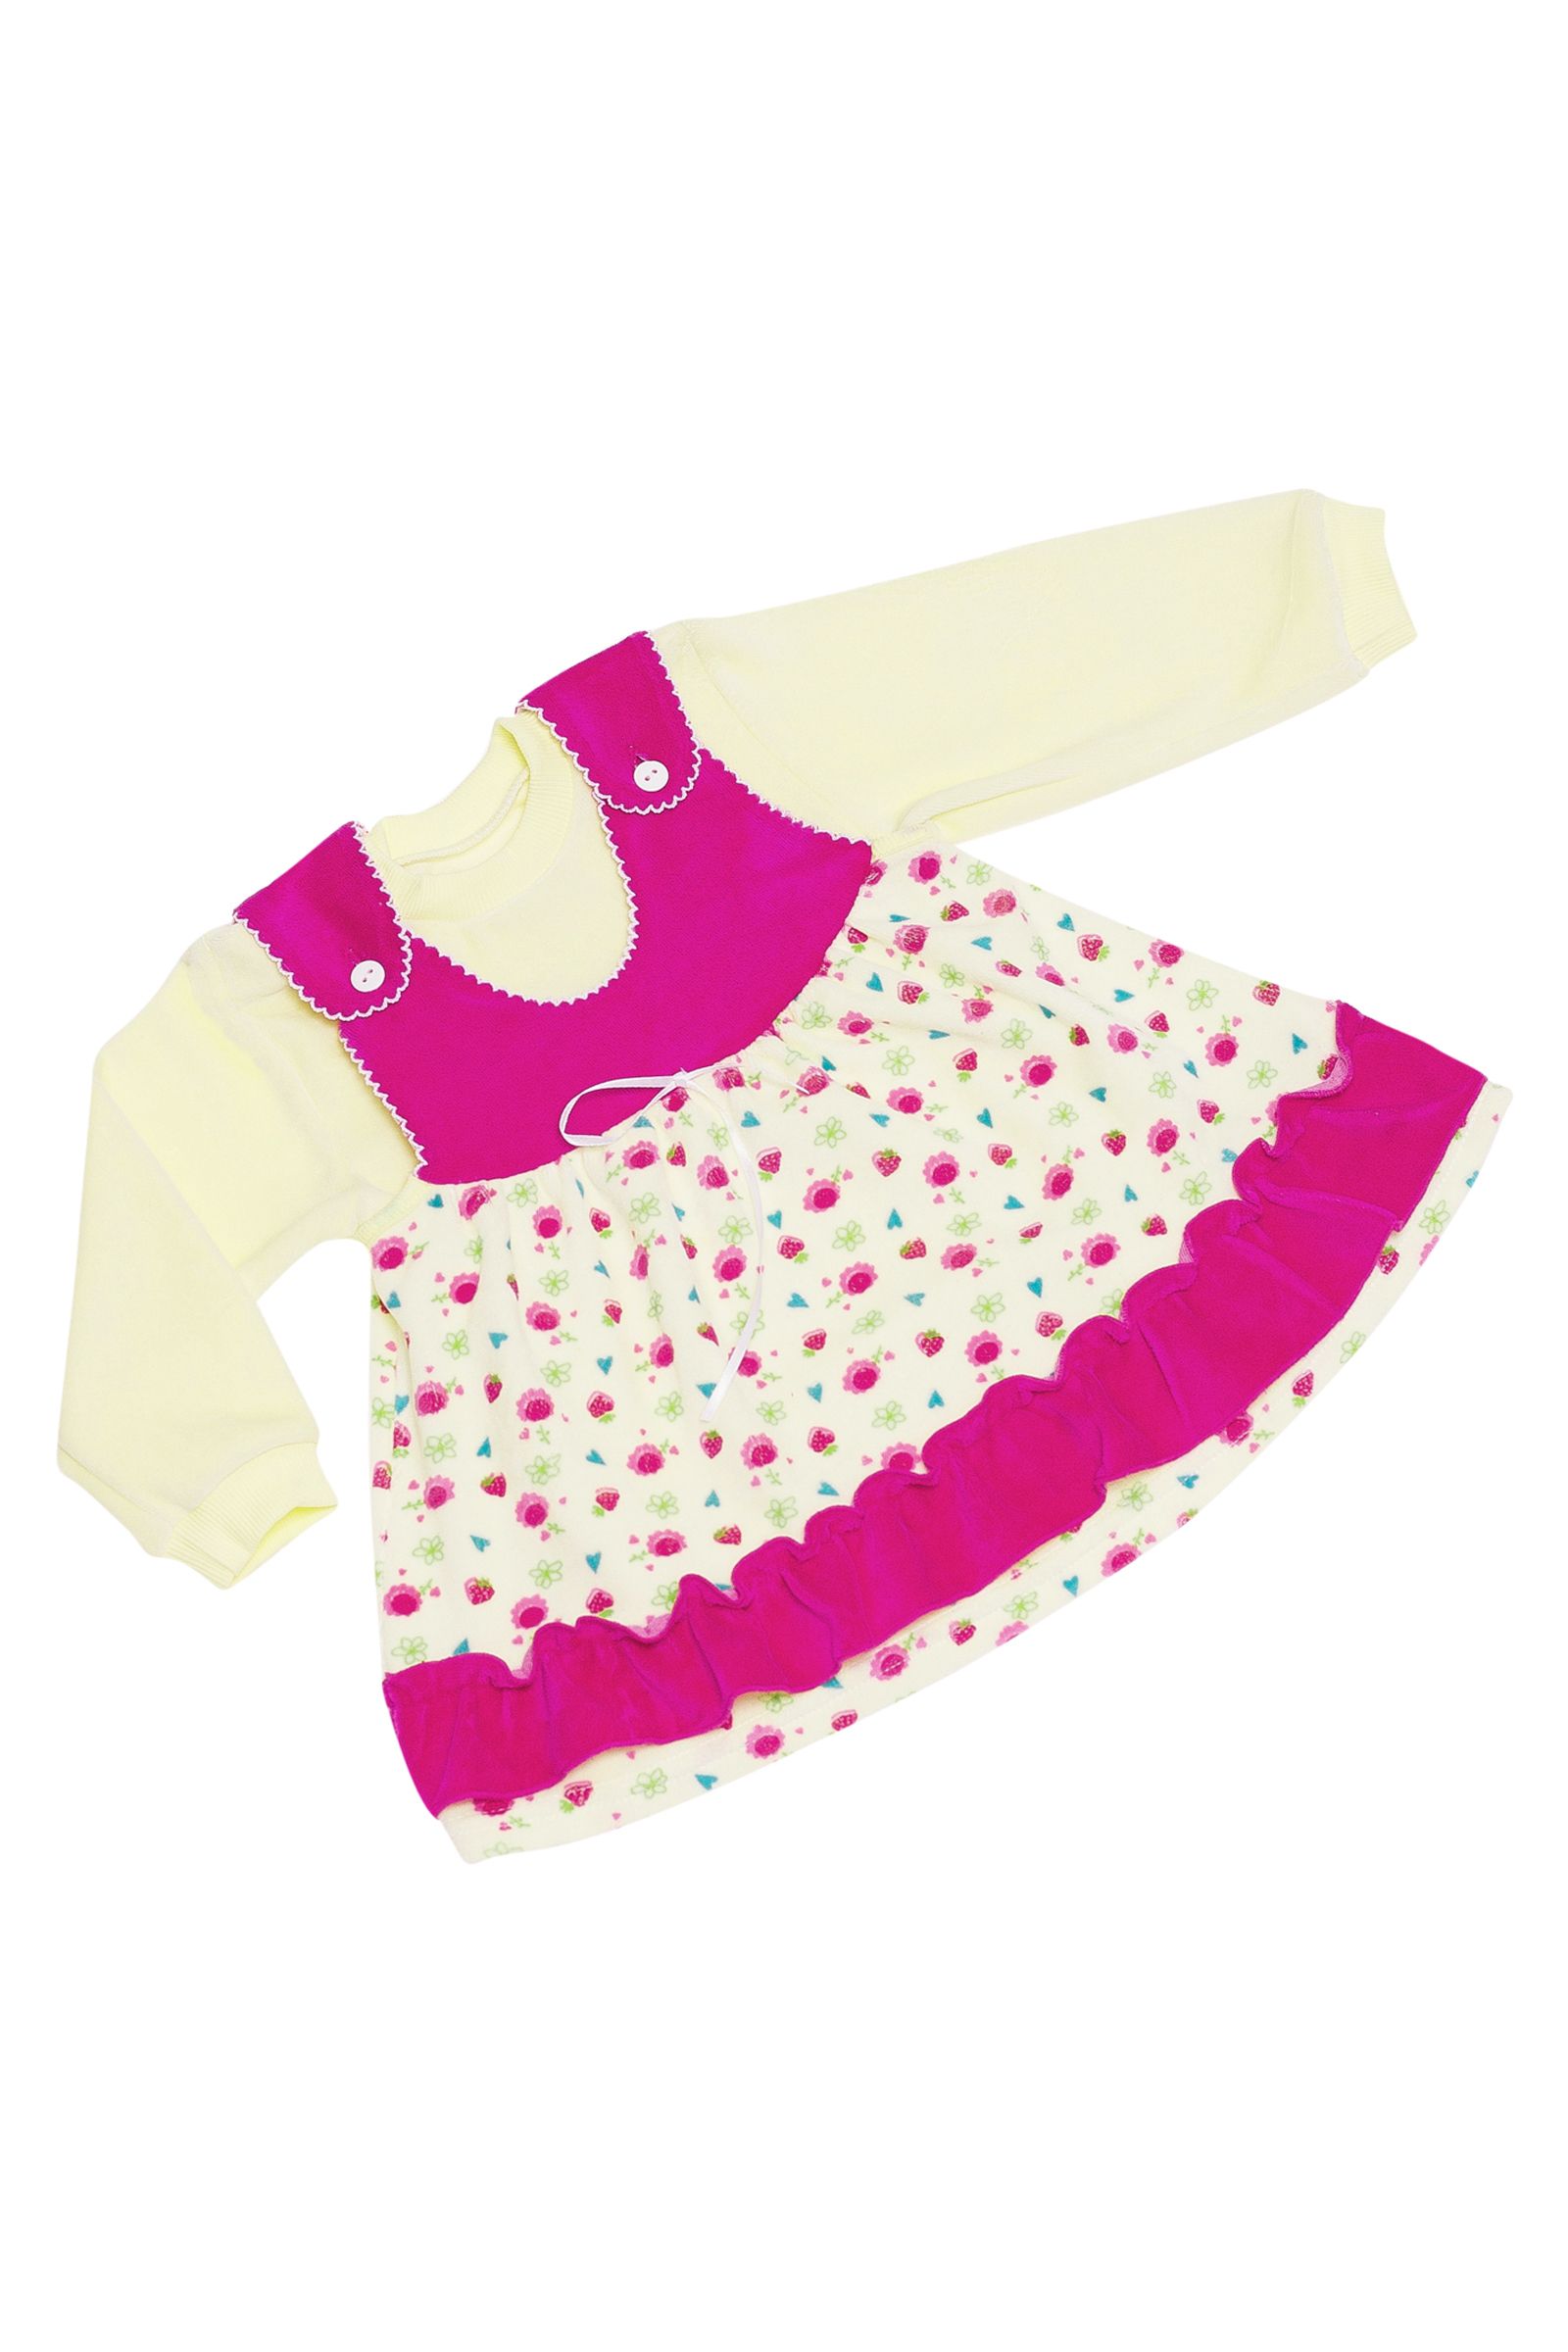 Комплект-КД04-1544 оптом от производителя детской одежды 'Алёна'